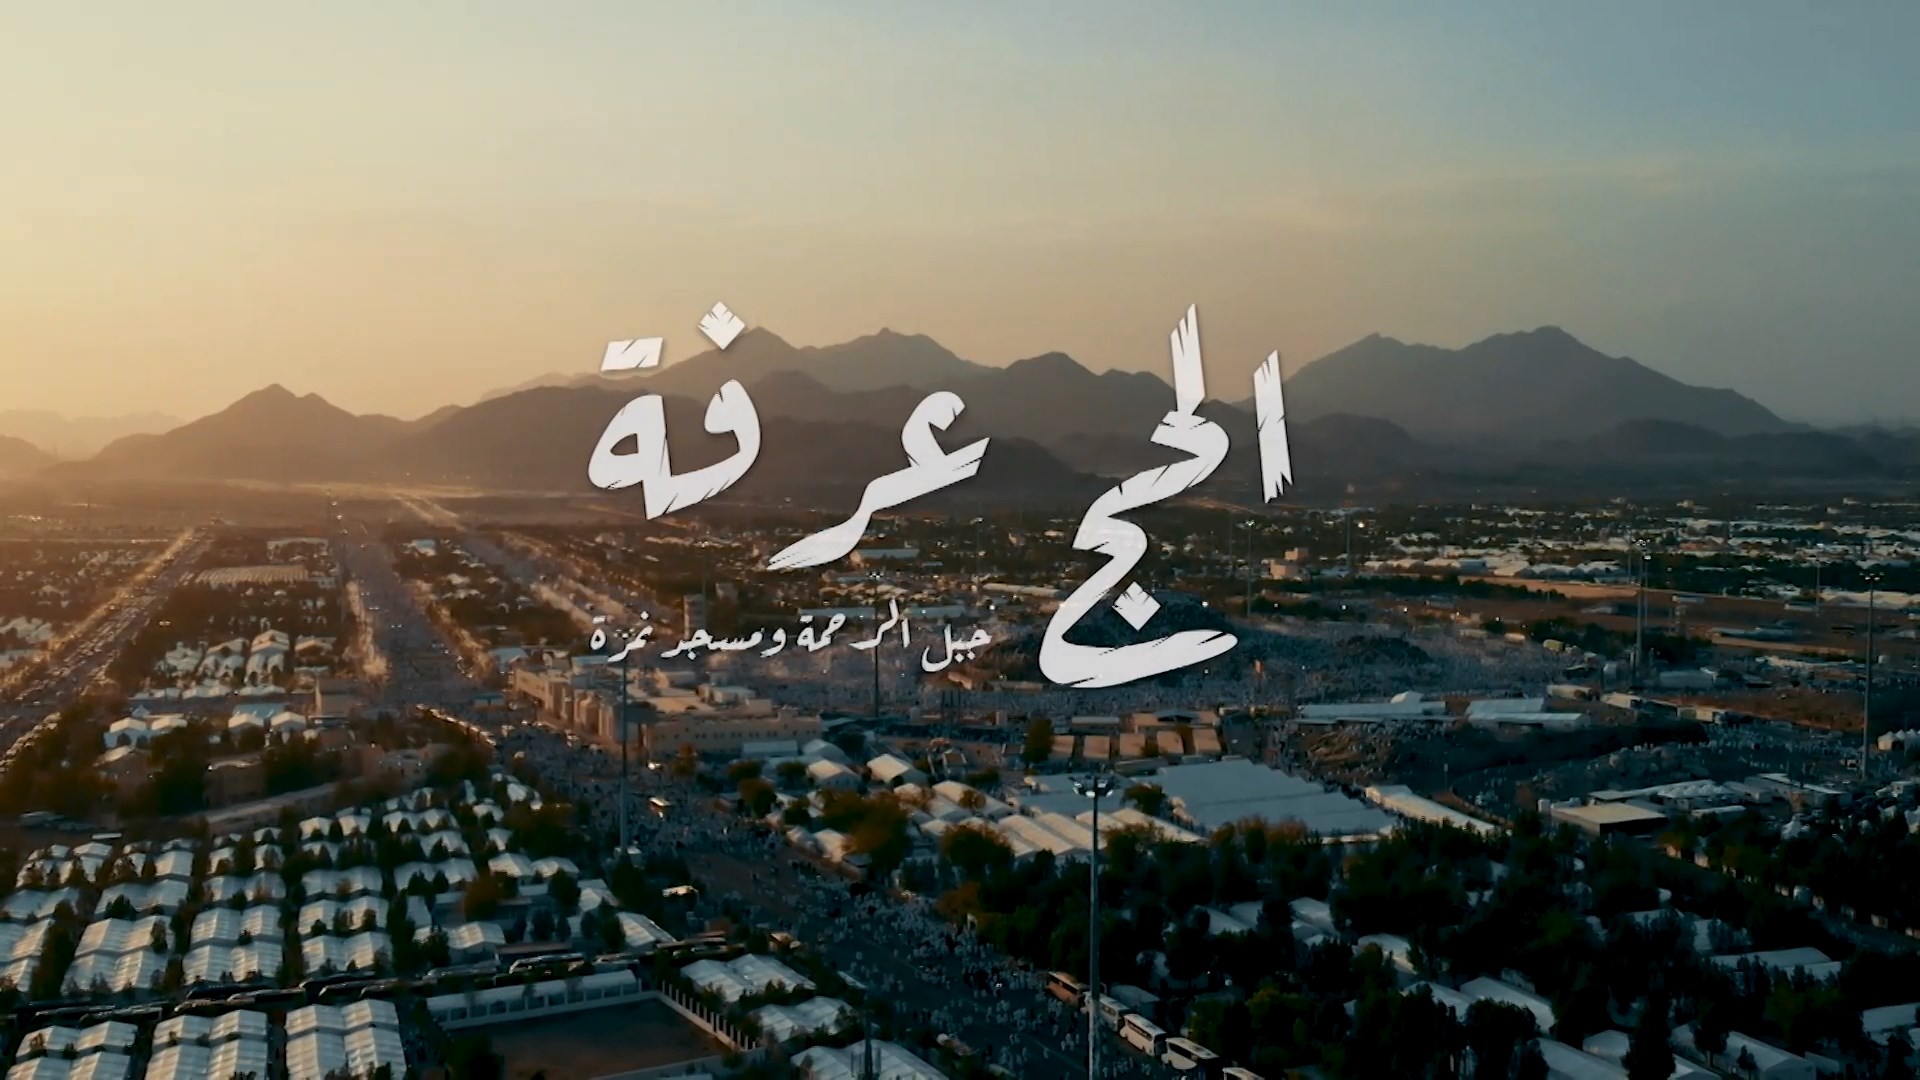 Al Hajj Arafah SHAHID 1080p | الحج عرفة -- Seeders: 3 -- Leechers: 0